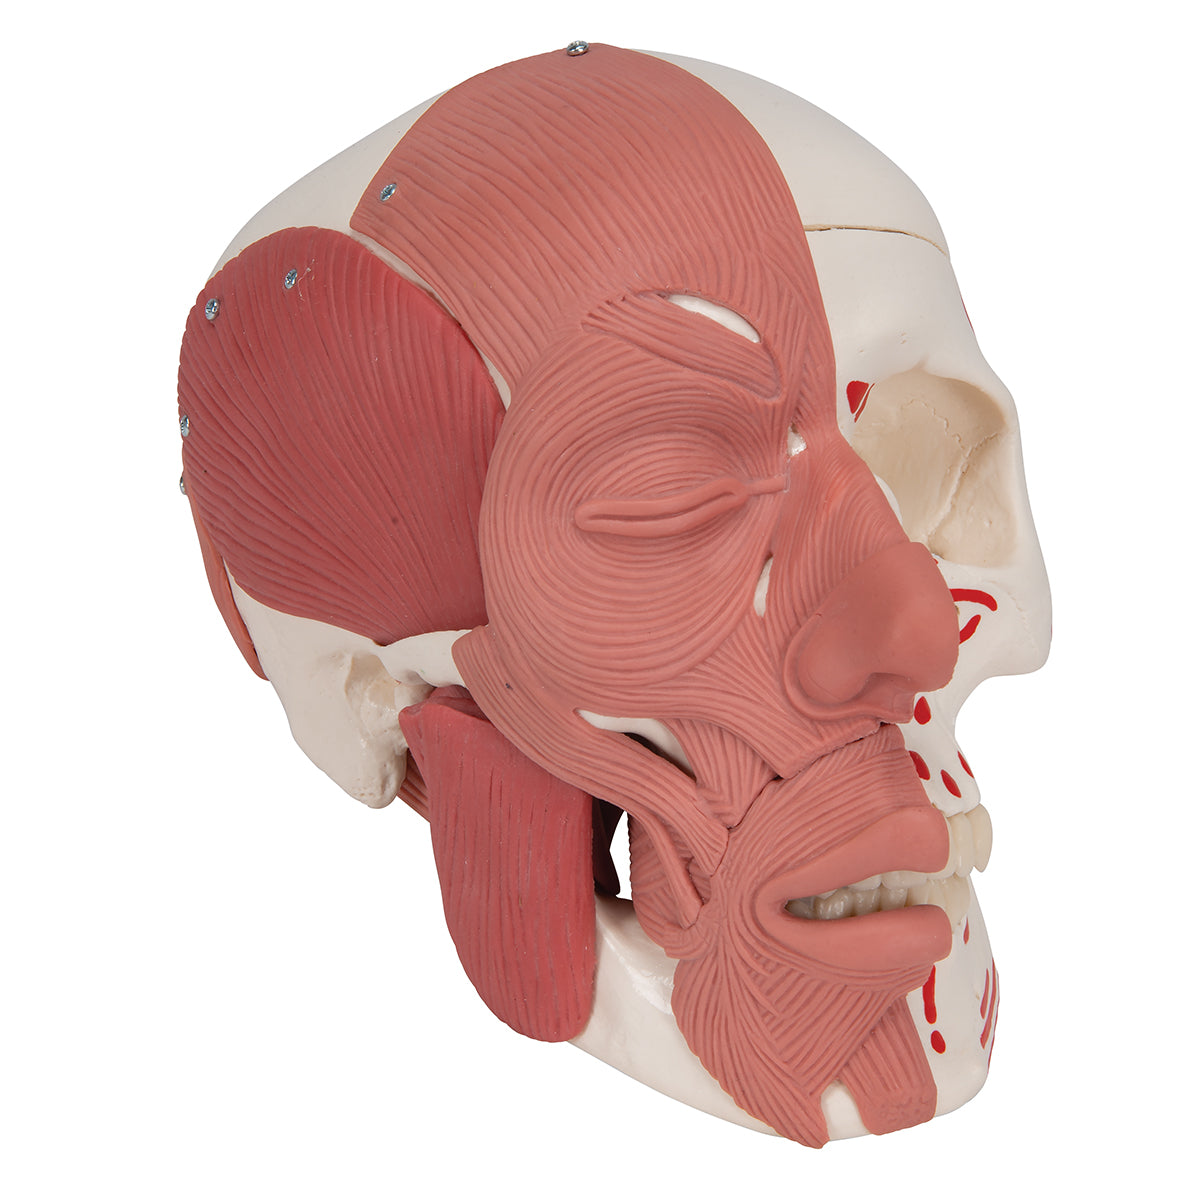 Kraniemodel med både tygge- og ansigtsmusklerne